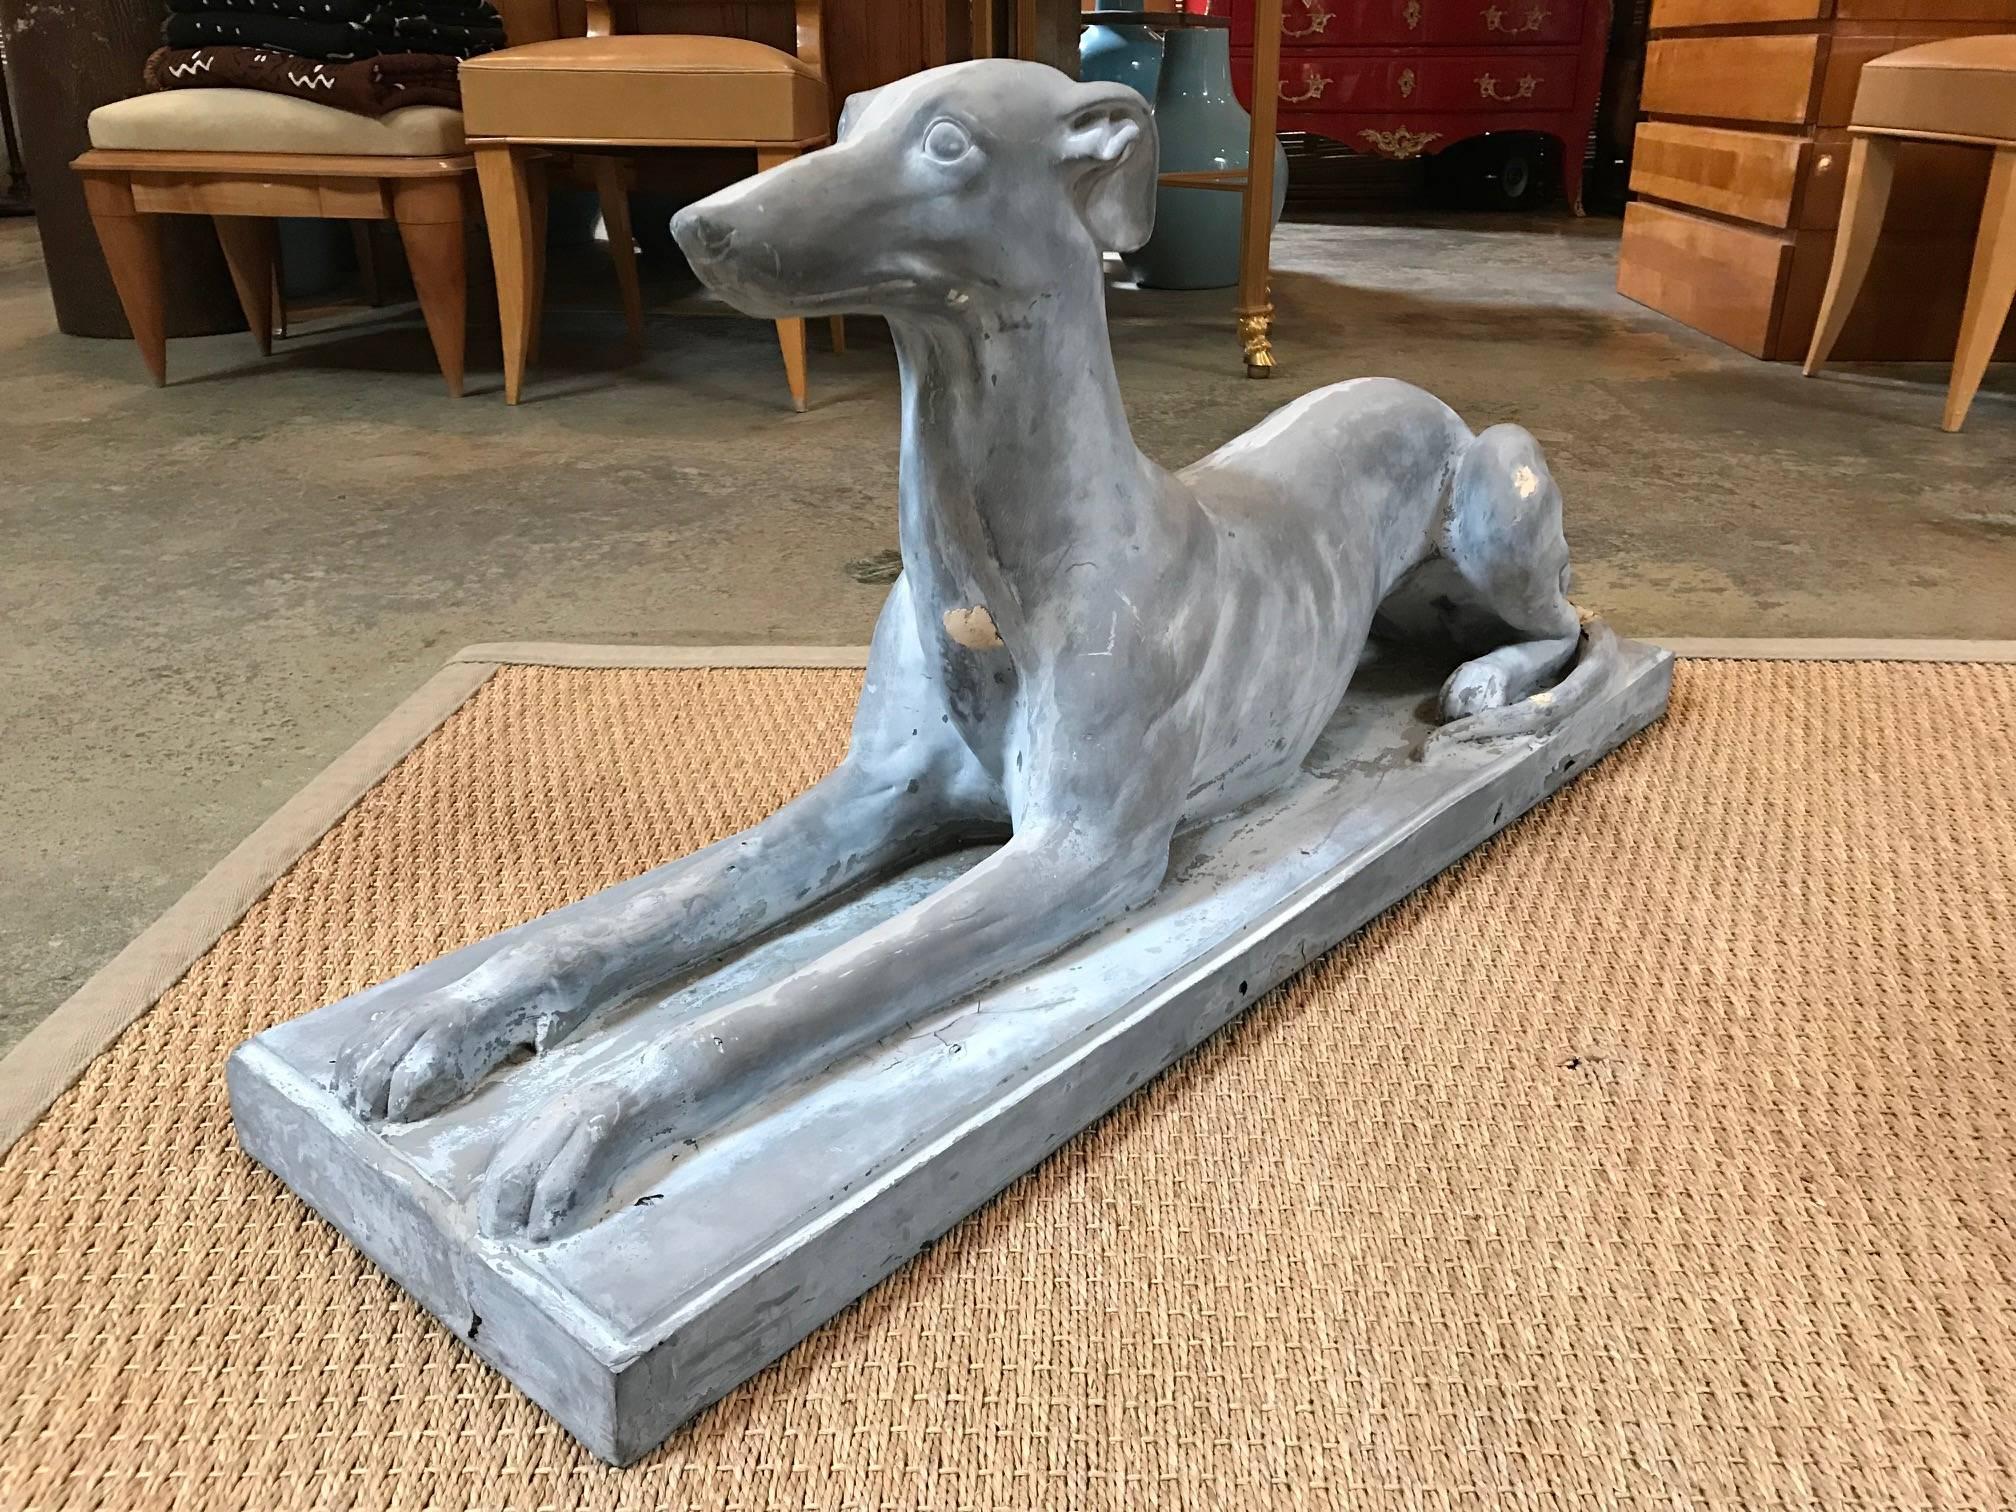 Liegender Whippet-Hund mit aufrechter Haltung, geformt in Kompositionsmaterial.